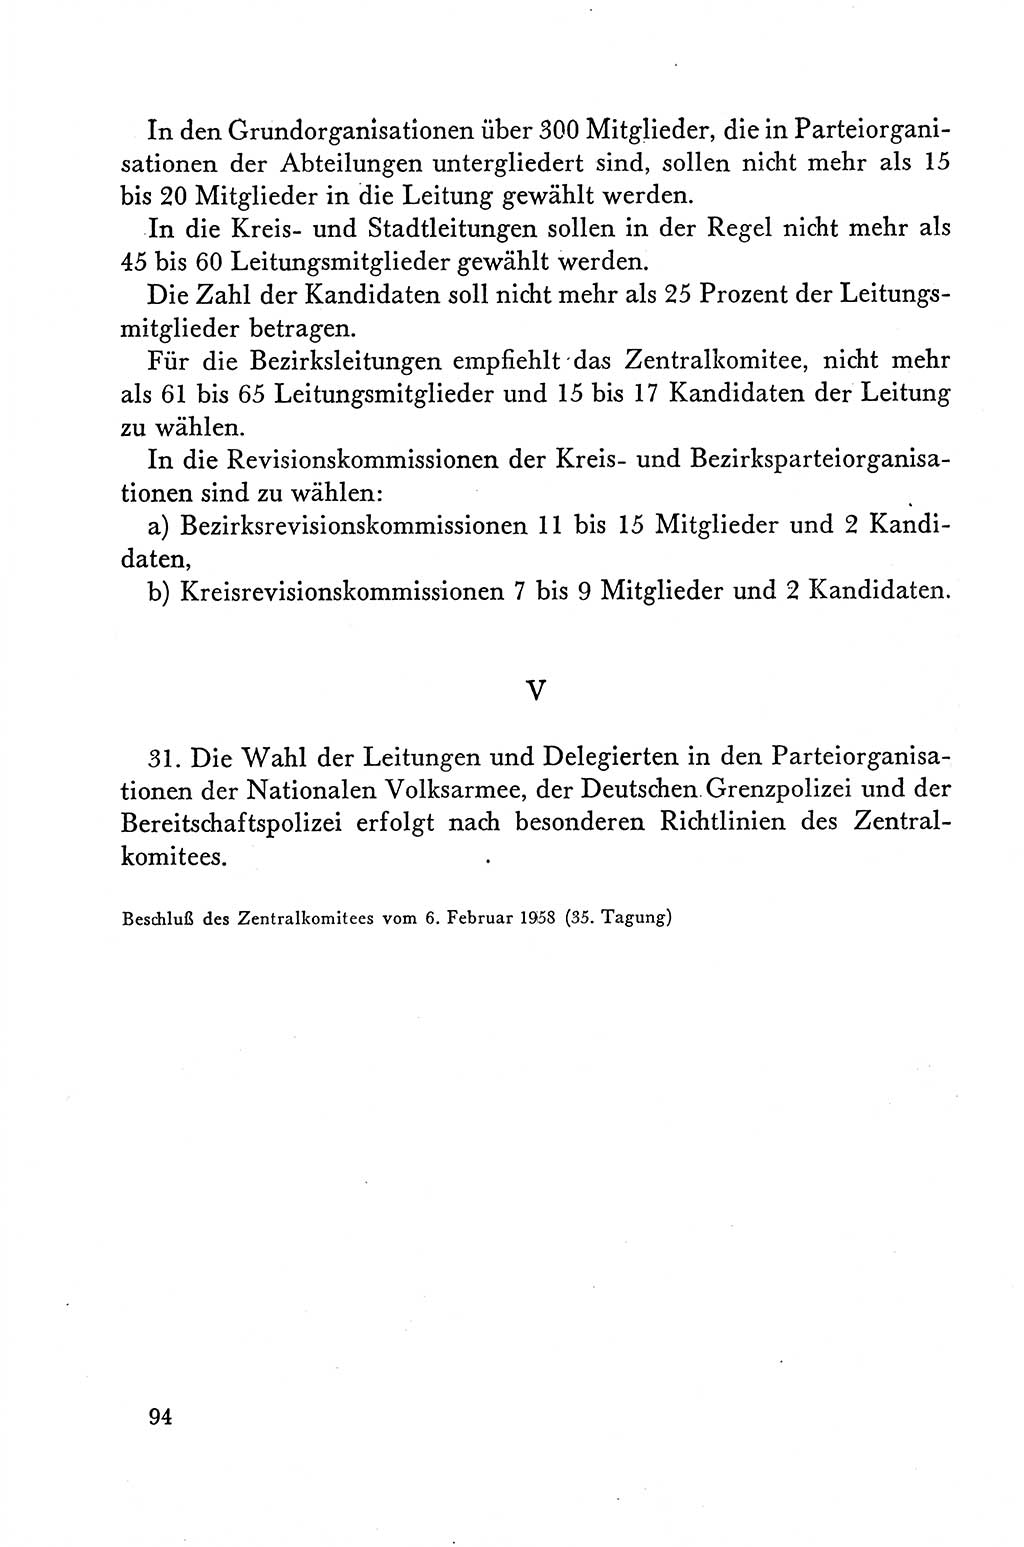 Dokumente der Sozialistischen Einheitspartei Deutschlands (SED) [Deutsche Demokratische Republik (DDR)] 1958-1959, Seite 94 (Dok. SED DDR 1958-1959, S. 94)